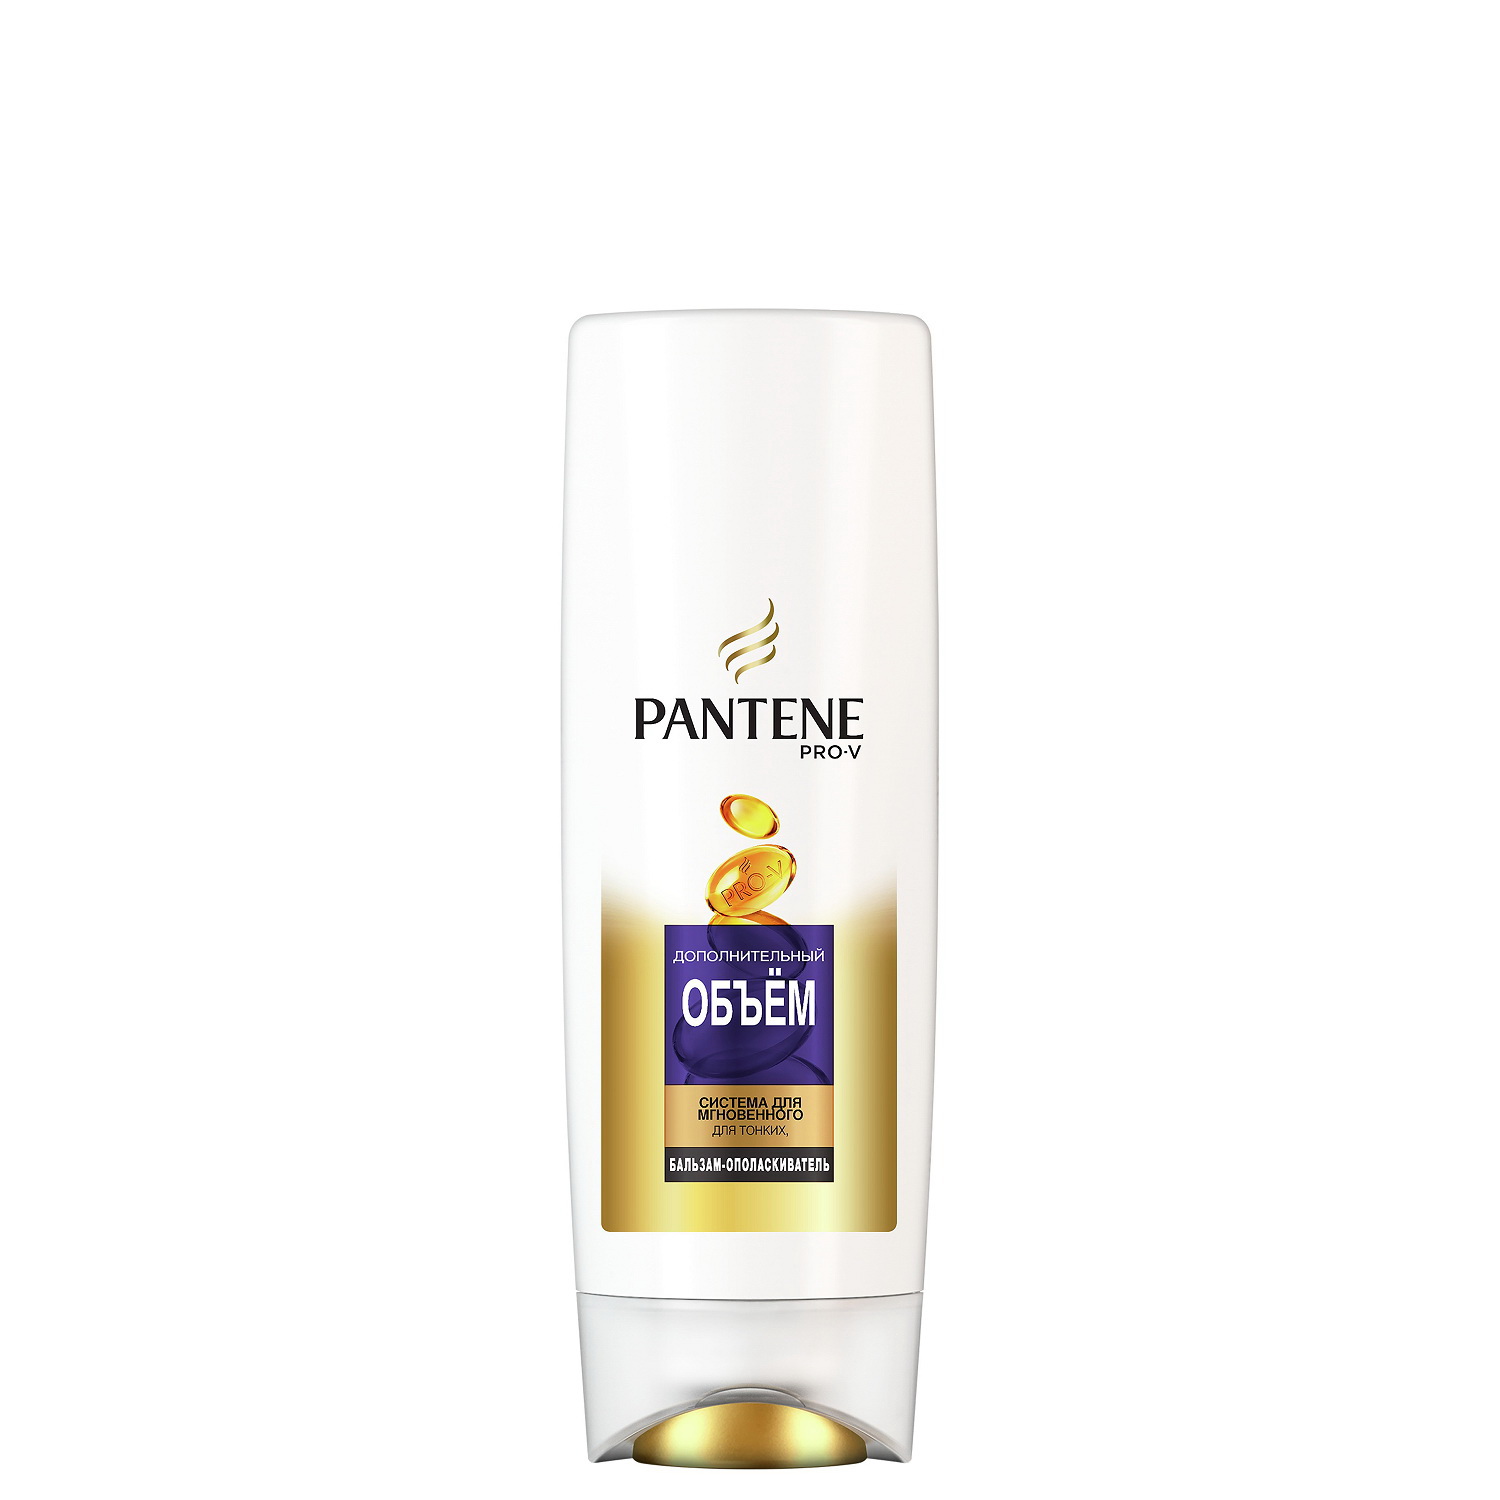 Pantene Pro-V Бальзам-ополаскиватель Дополнительный объем для тонких/ослабленных волос 200мл